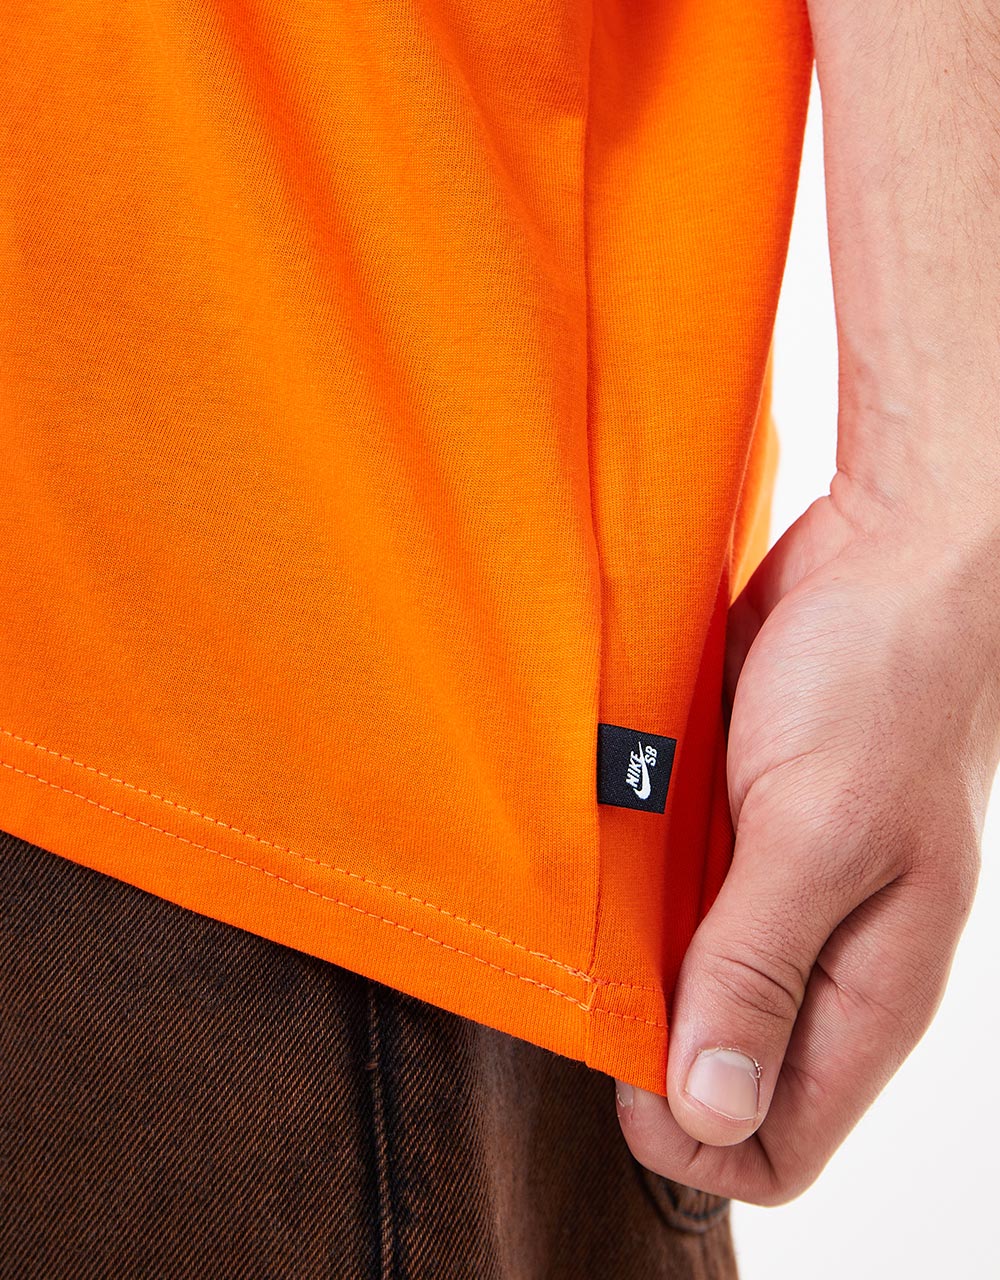 Nike SB Muni T-Shirt - Total Orange